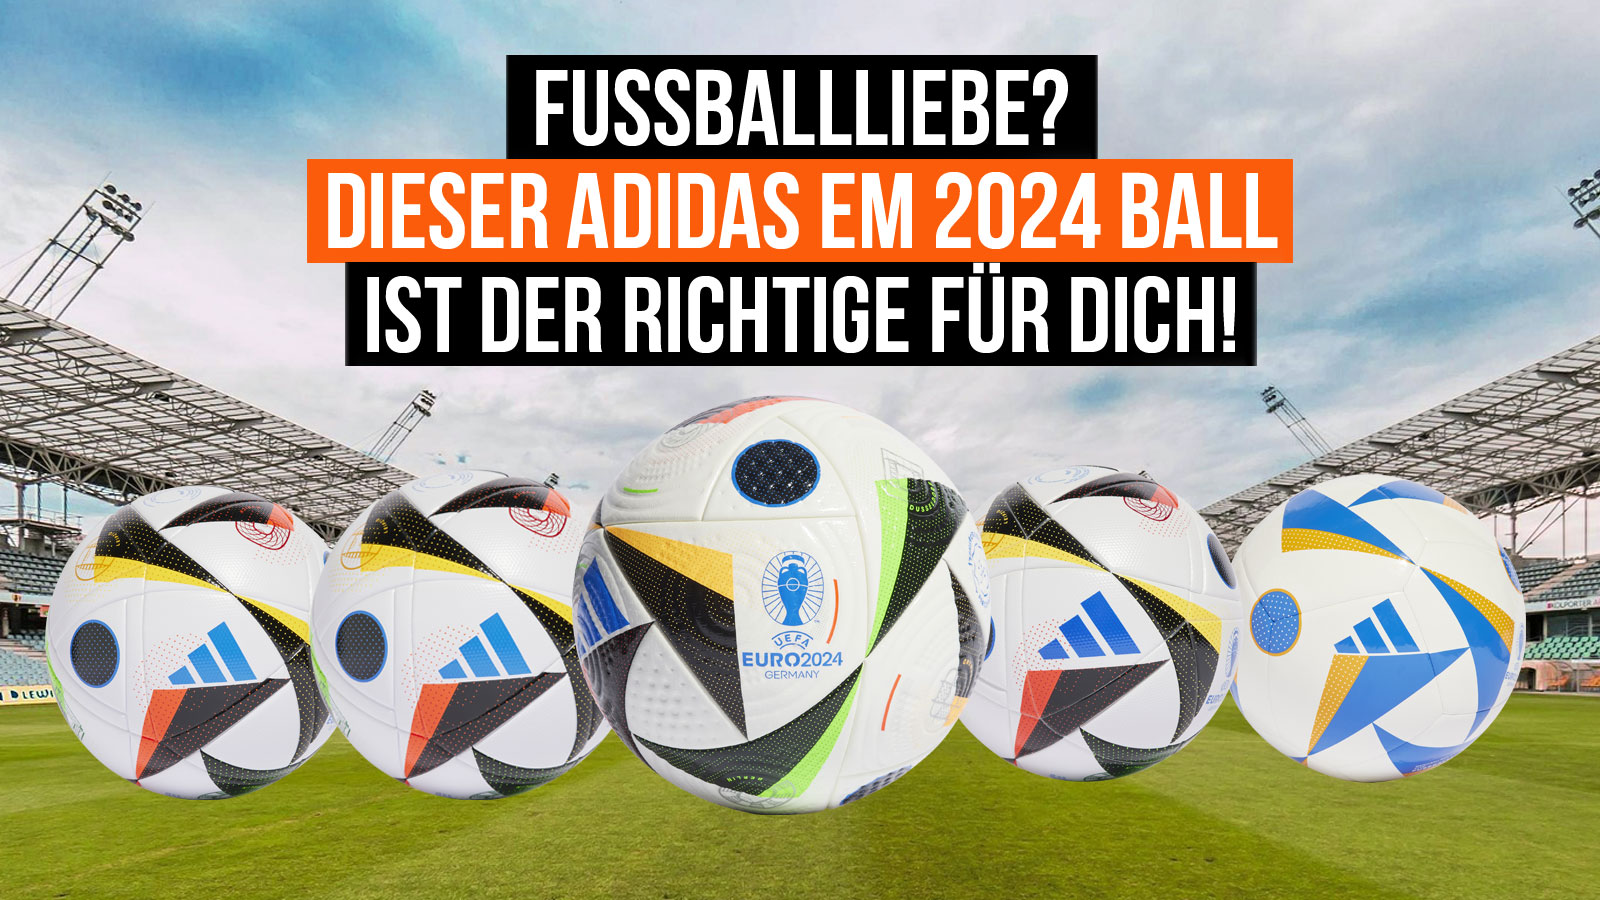 die adidas Fussballliebe EM 2024 Bälle der Euro in Deutschland